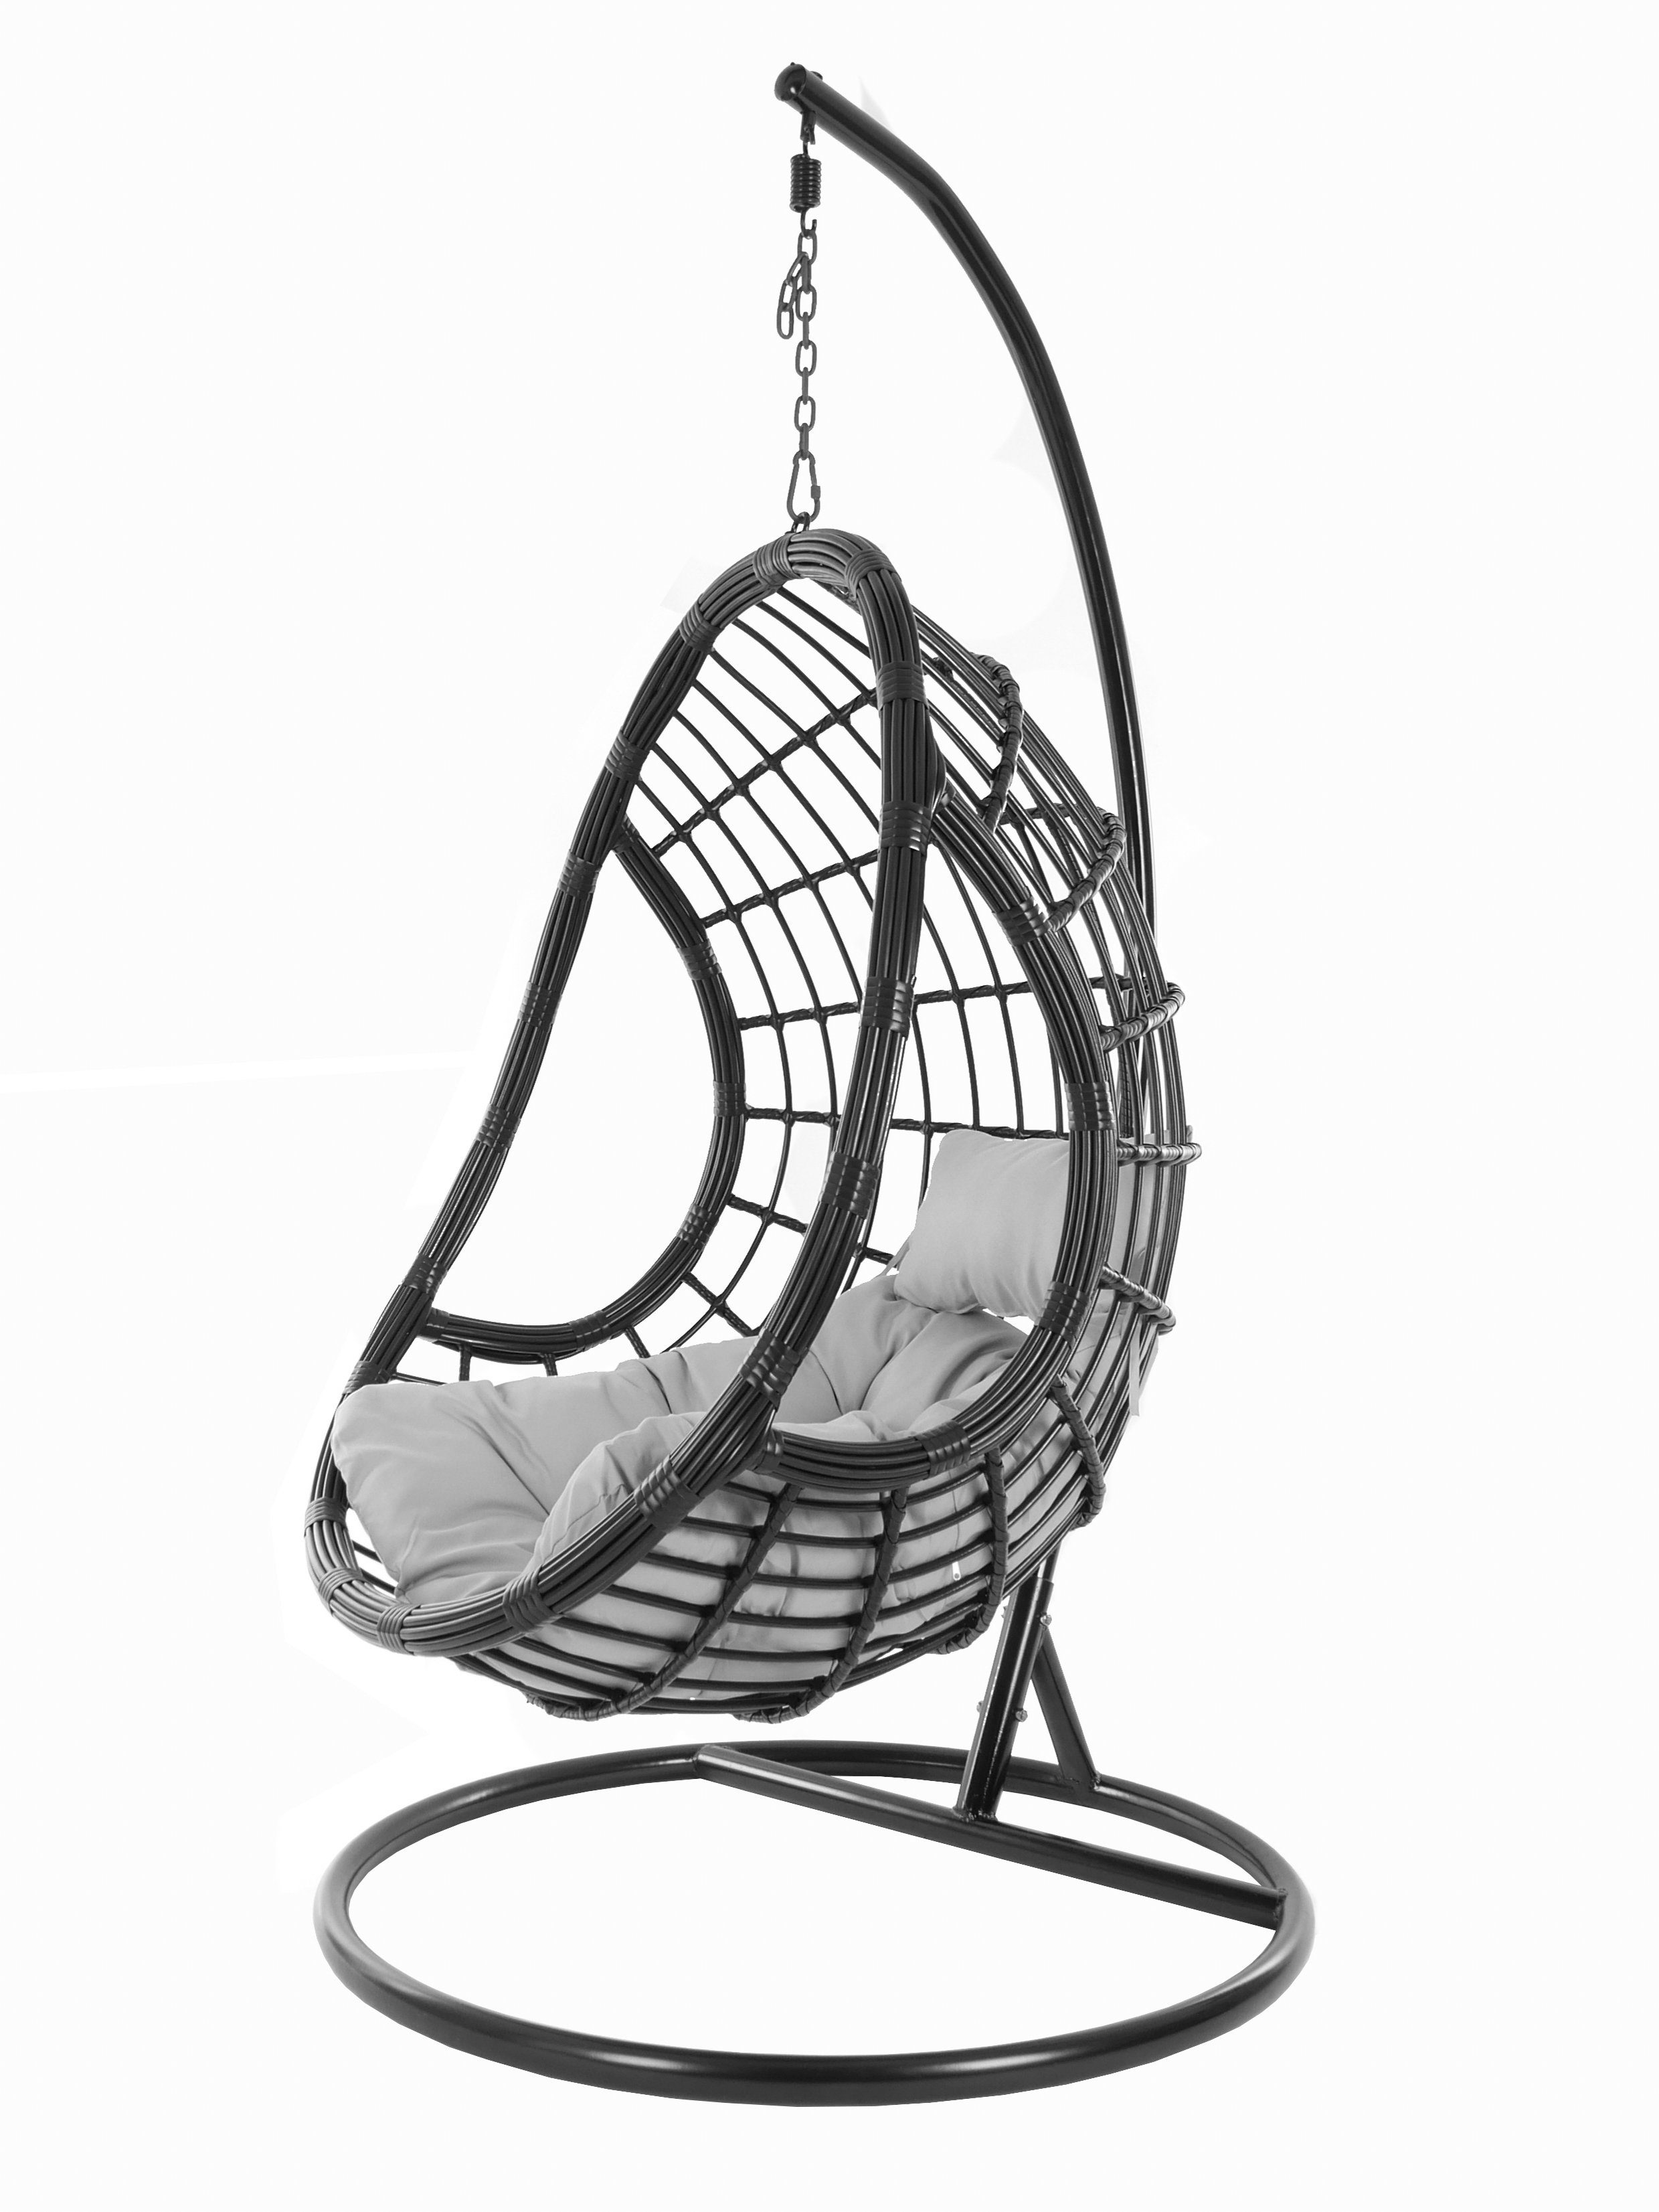 KIDEO Hängesessel PALMANOVA black, grau Loungemöbel, Hängesessel (8008 Design edles cloud) Swing schwarz, und Gestell Chair, Schwebesessel, mit Kissen